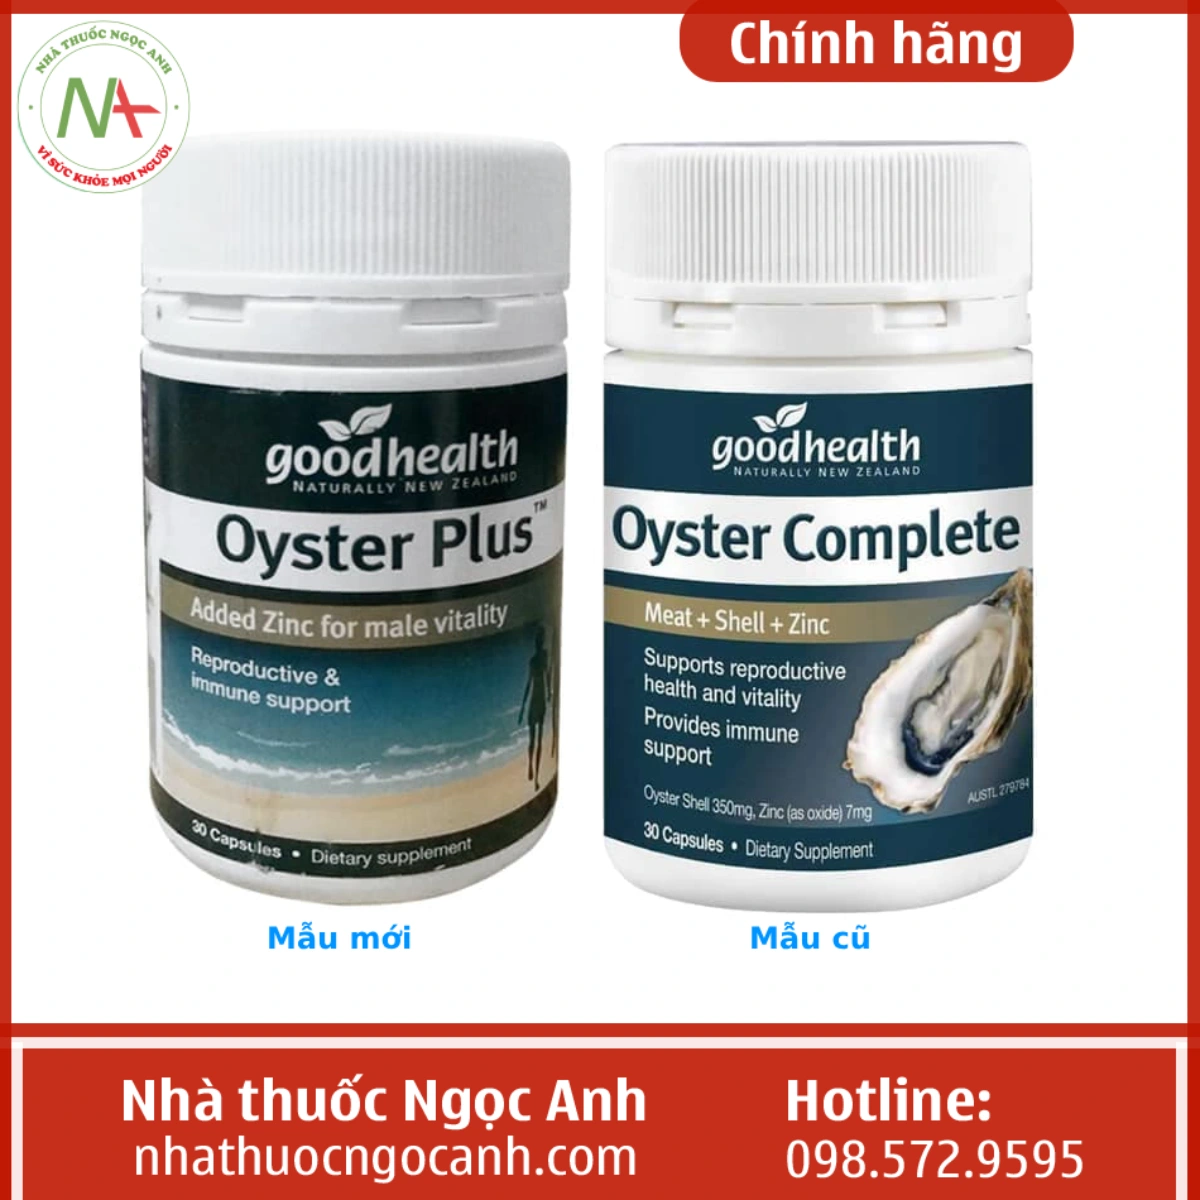 Goodhealth Oyster Plus